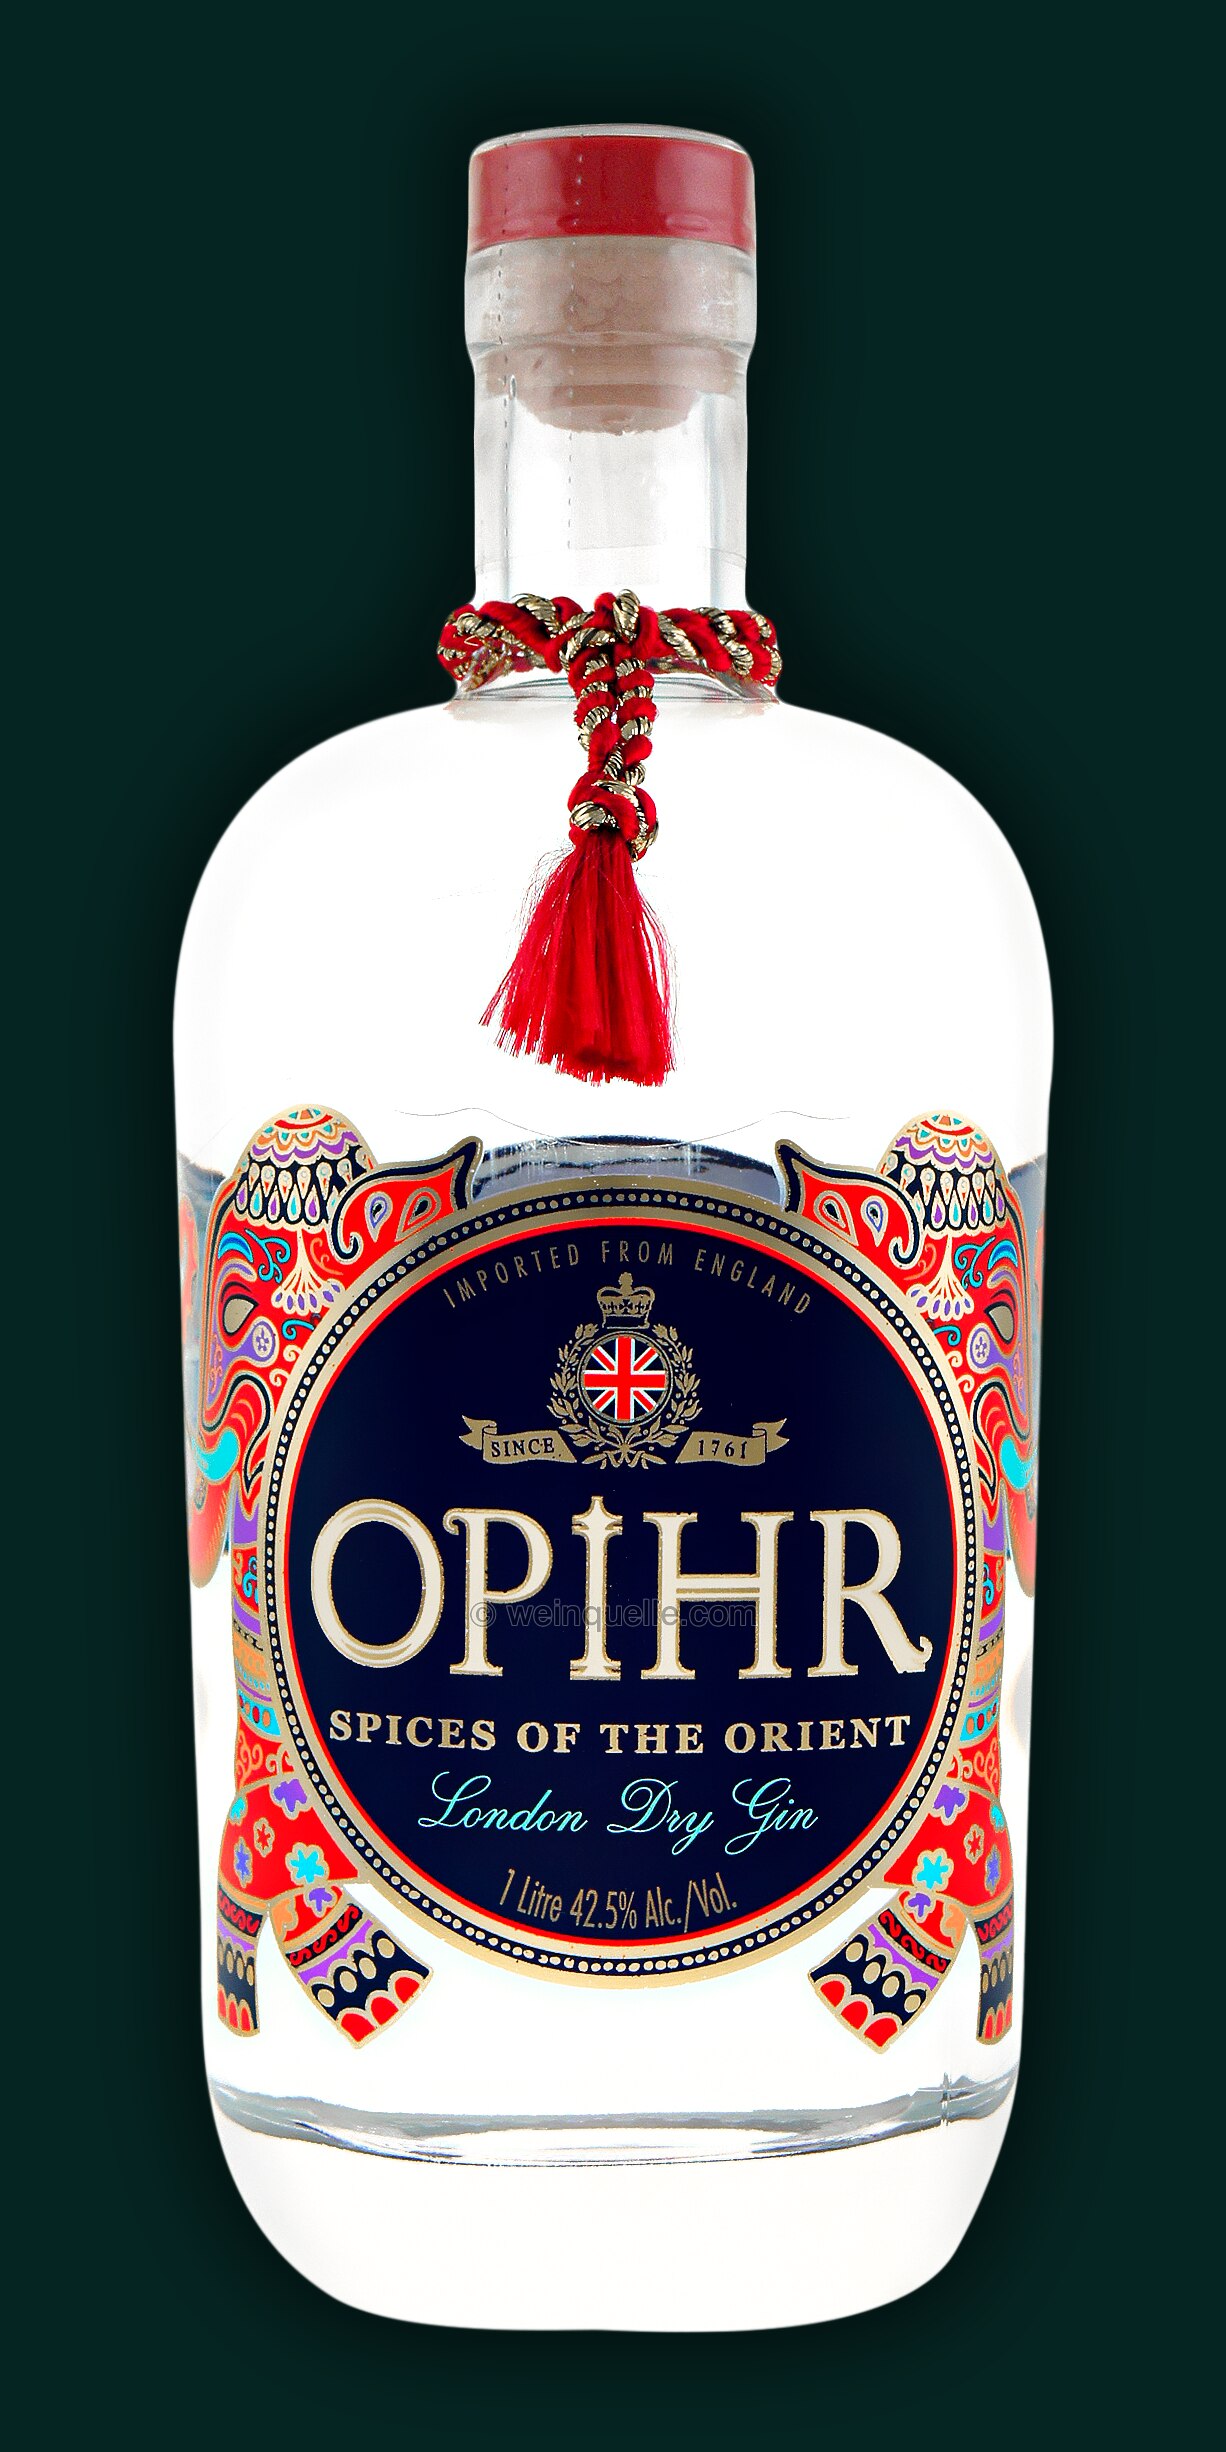 Lühmann Gin Weinquelle - Liter, London 1,0 € 26,50 Spiced Oriental Opihr 42,5% Dry